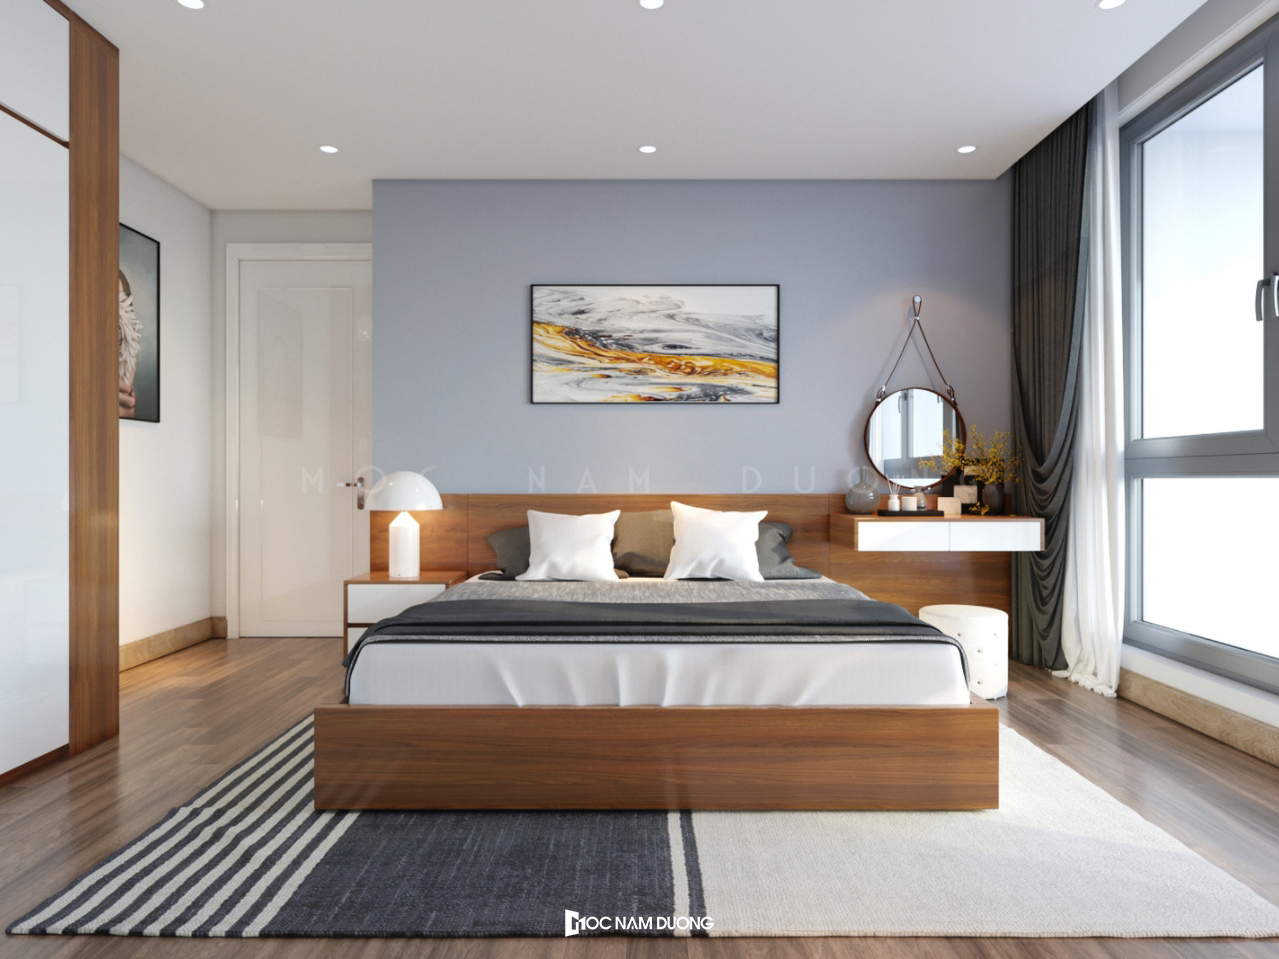 Vách tường được ốp gỗ sẽ là sự bổ sung ấm áp tuyệt vời cho căn phòng ngủ của bạn